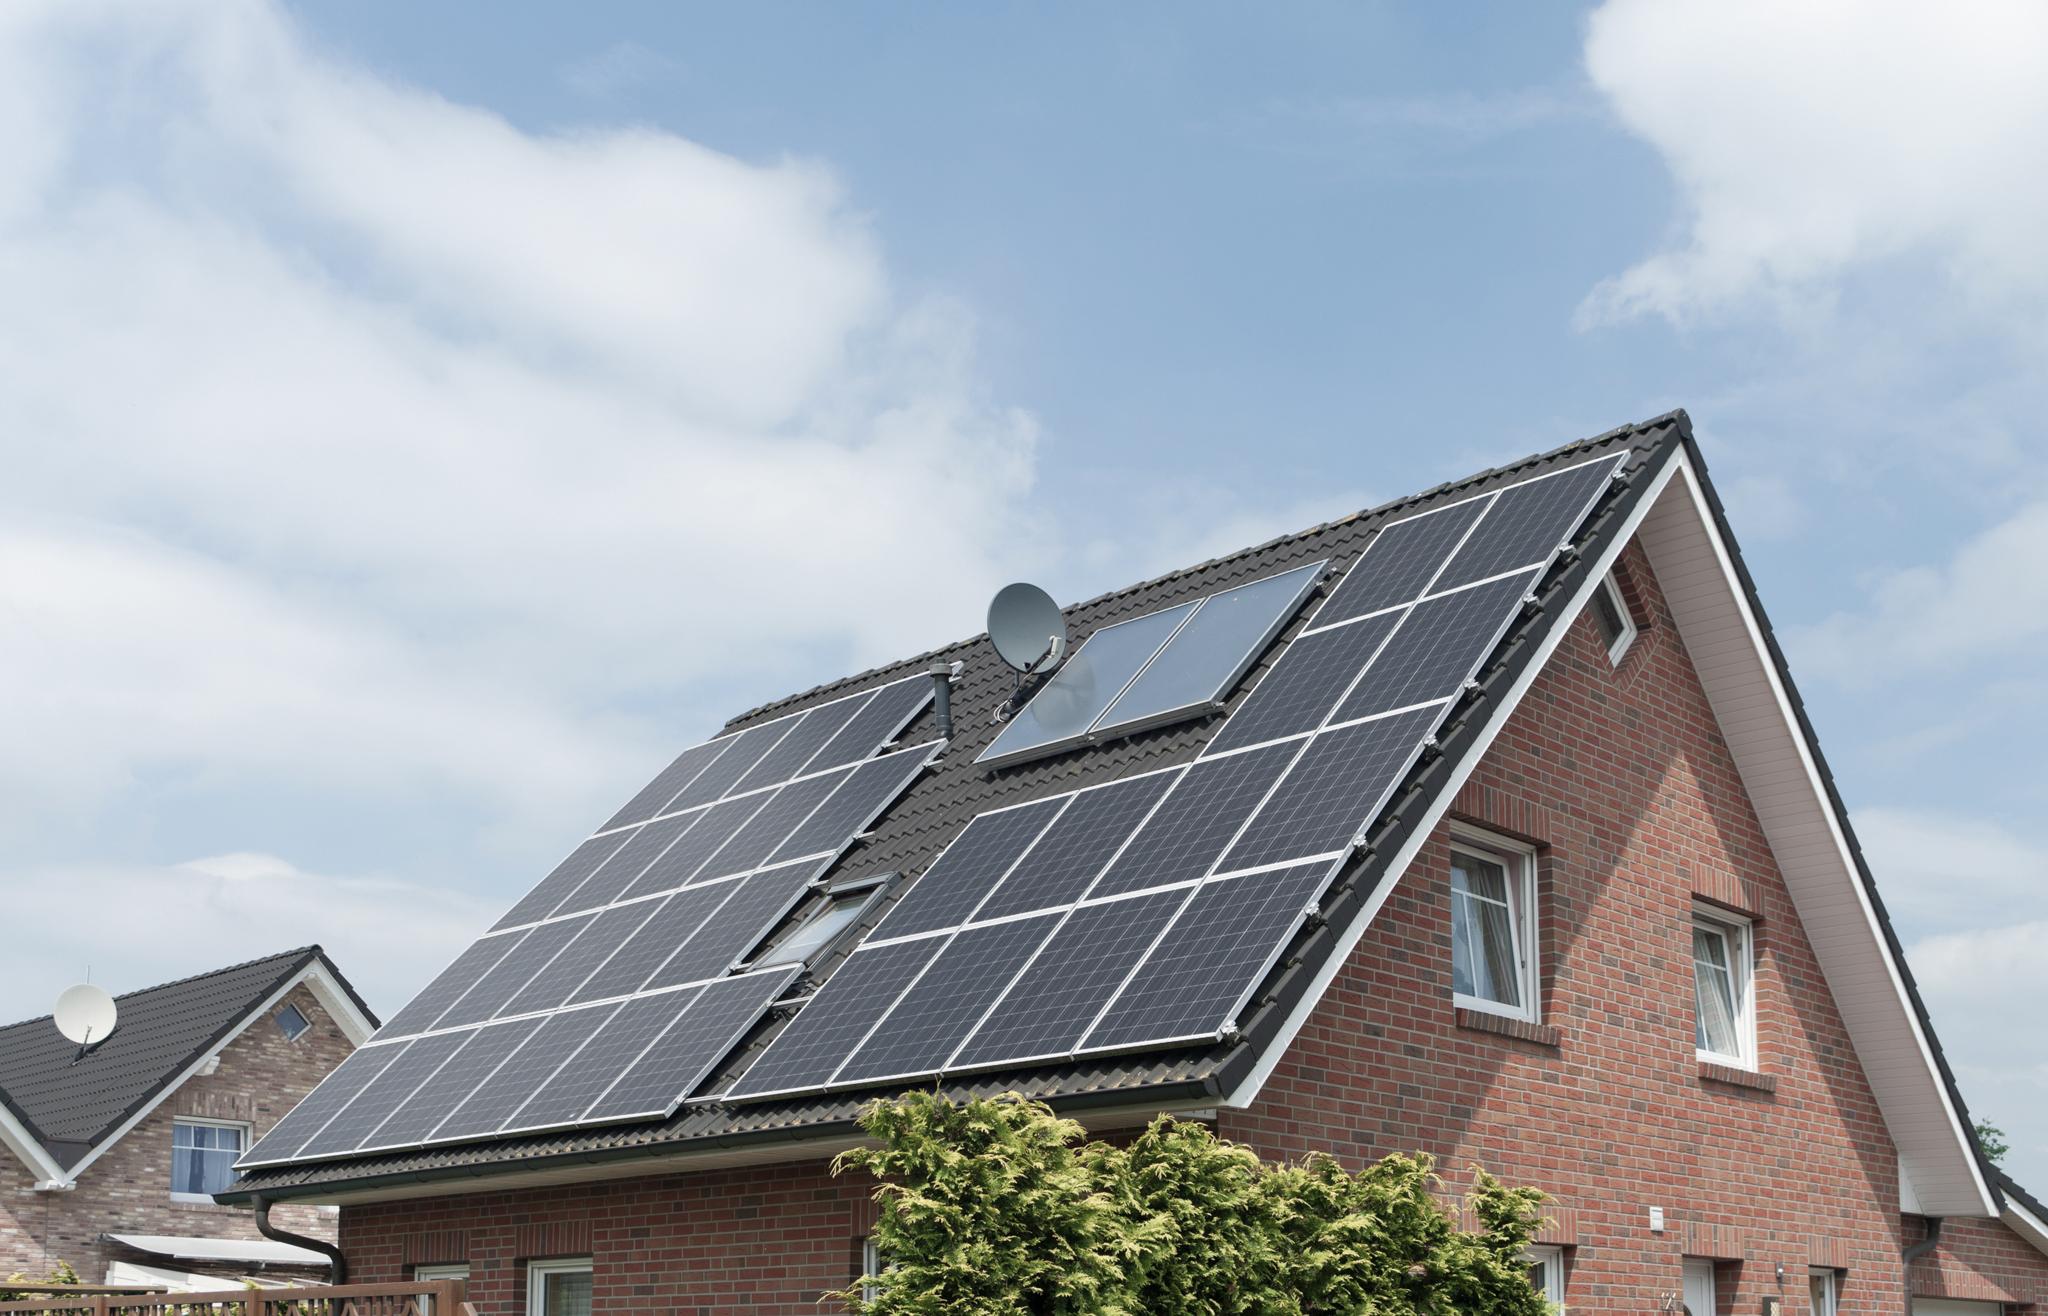 Einfamilienhaus mit Solaranlage auf dem Dach – Photovoltaik in Köln